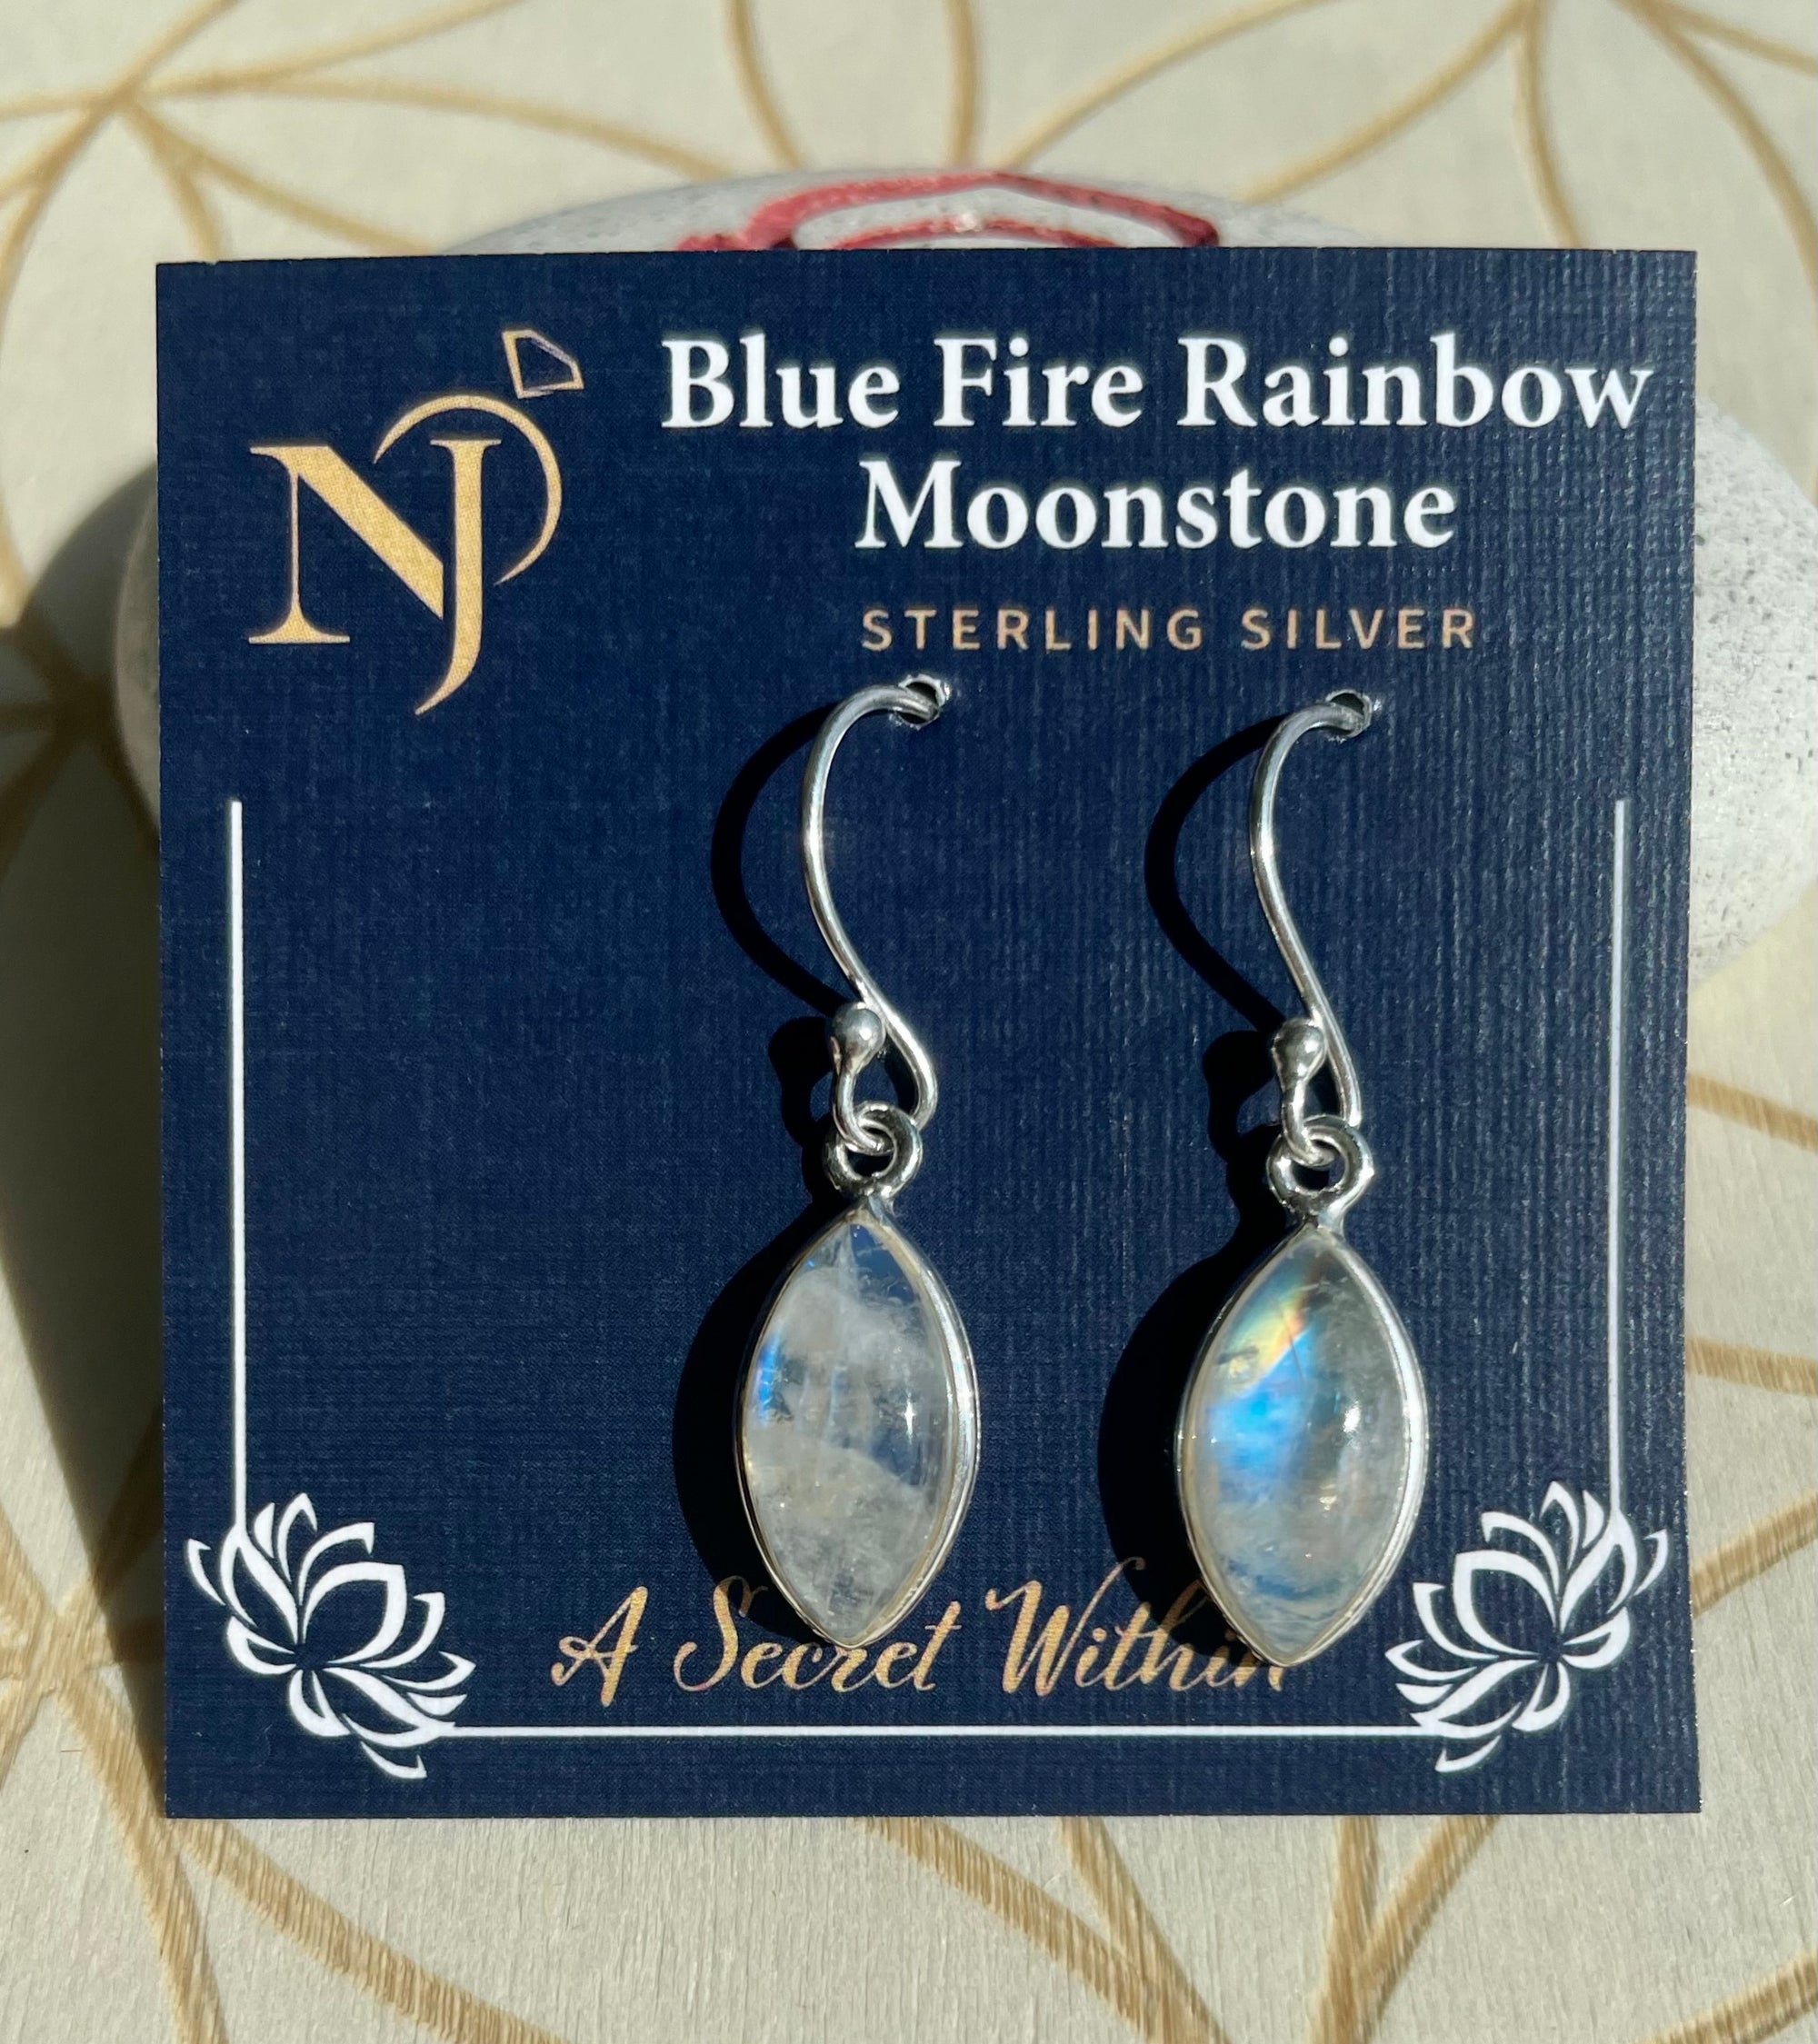 Blue Fire Rainbow Moonstone Sterling Silver Earrings